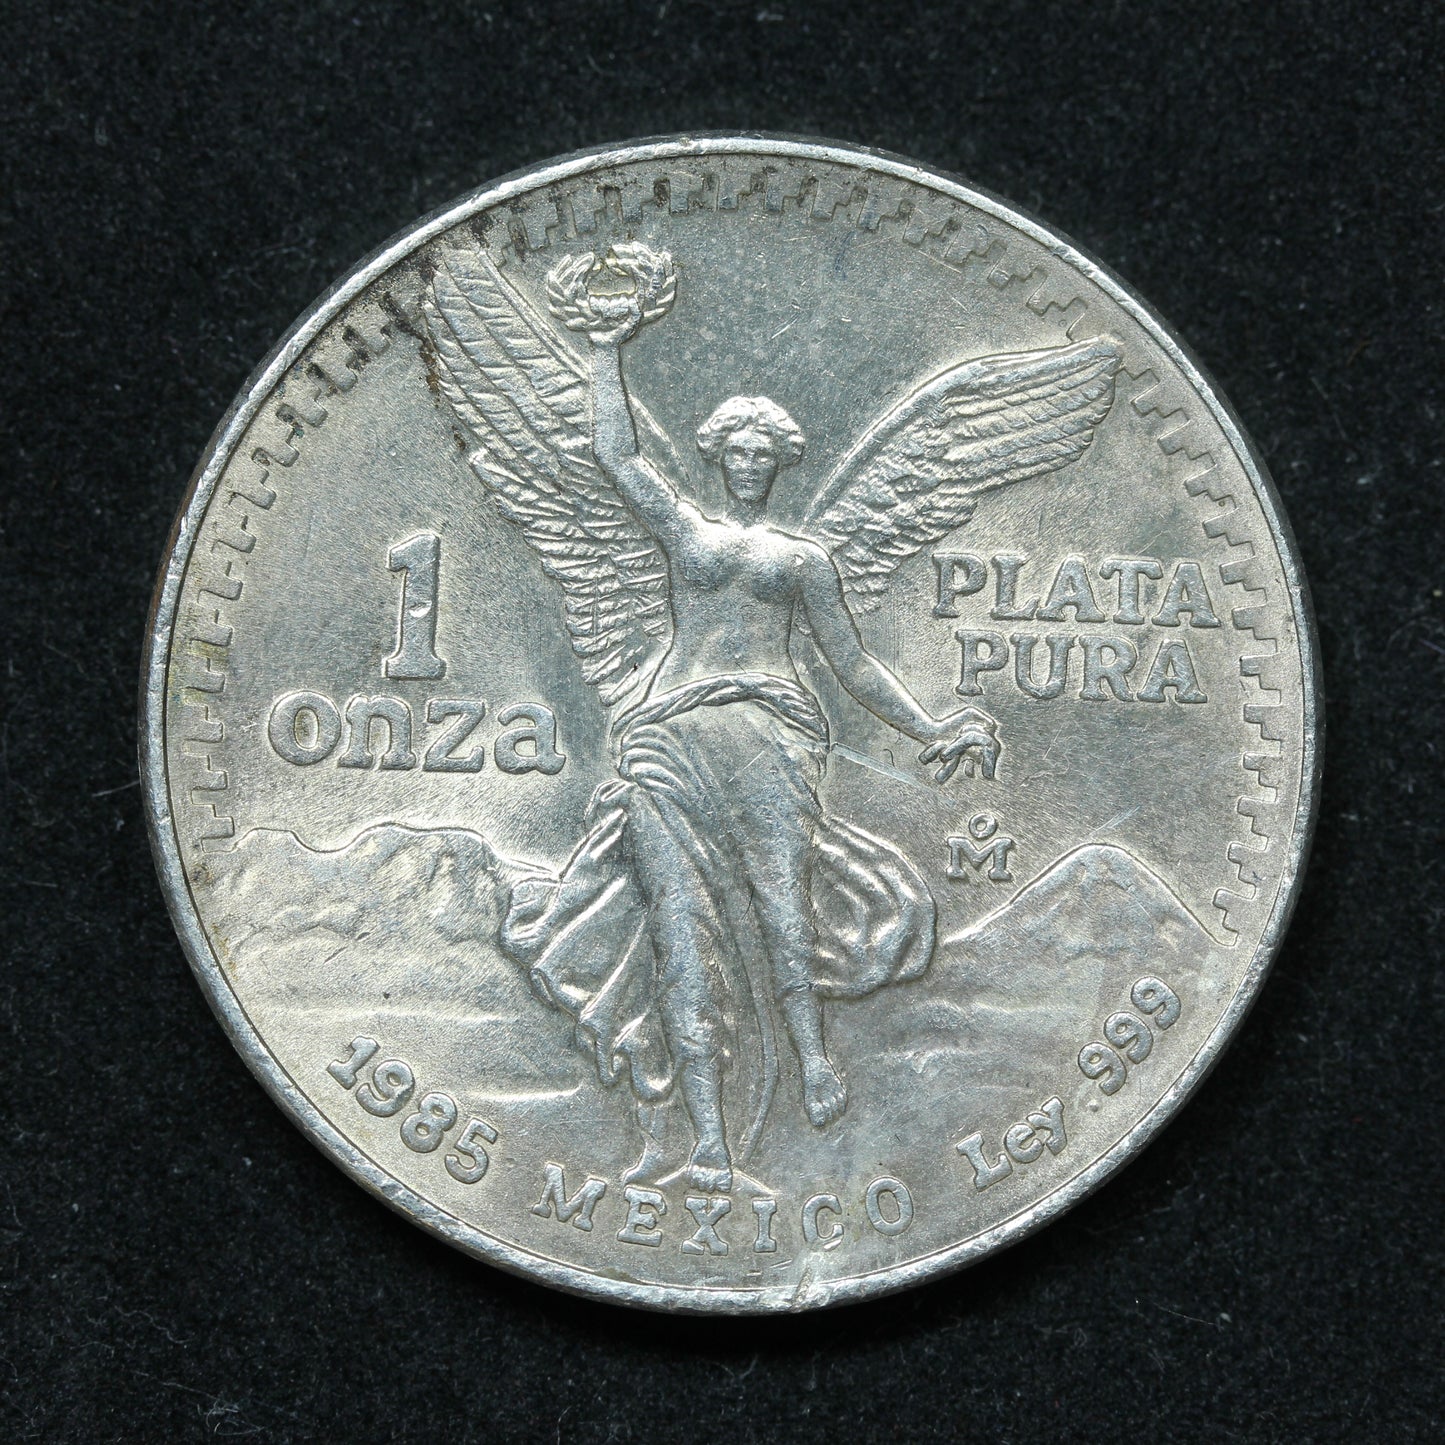 1985 1 oz Onza .999 Fine Silver Mexico - Mexican Silver Libertad